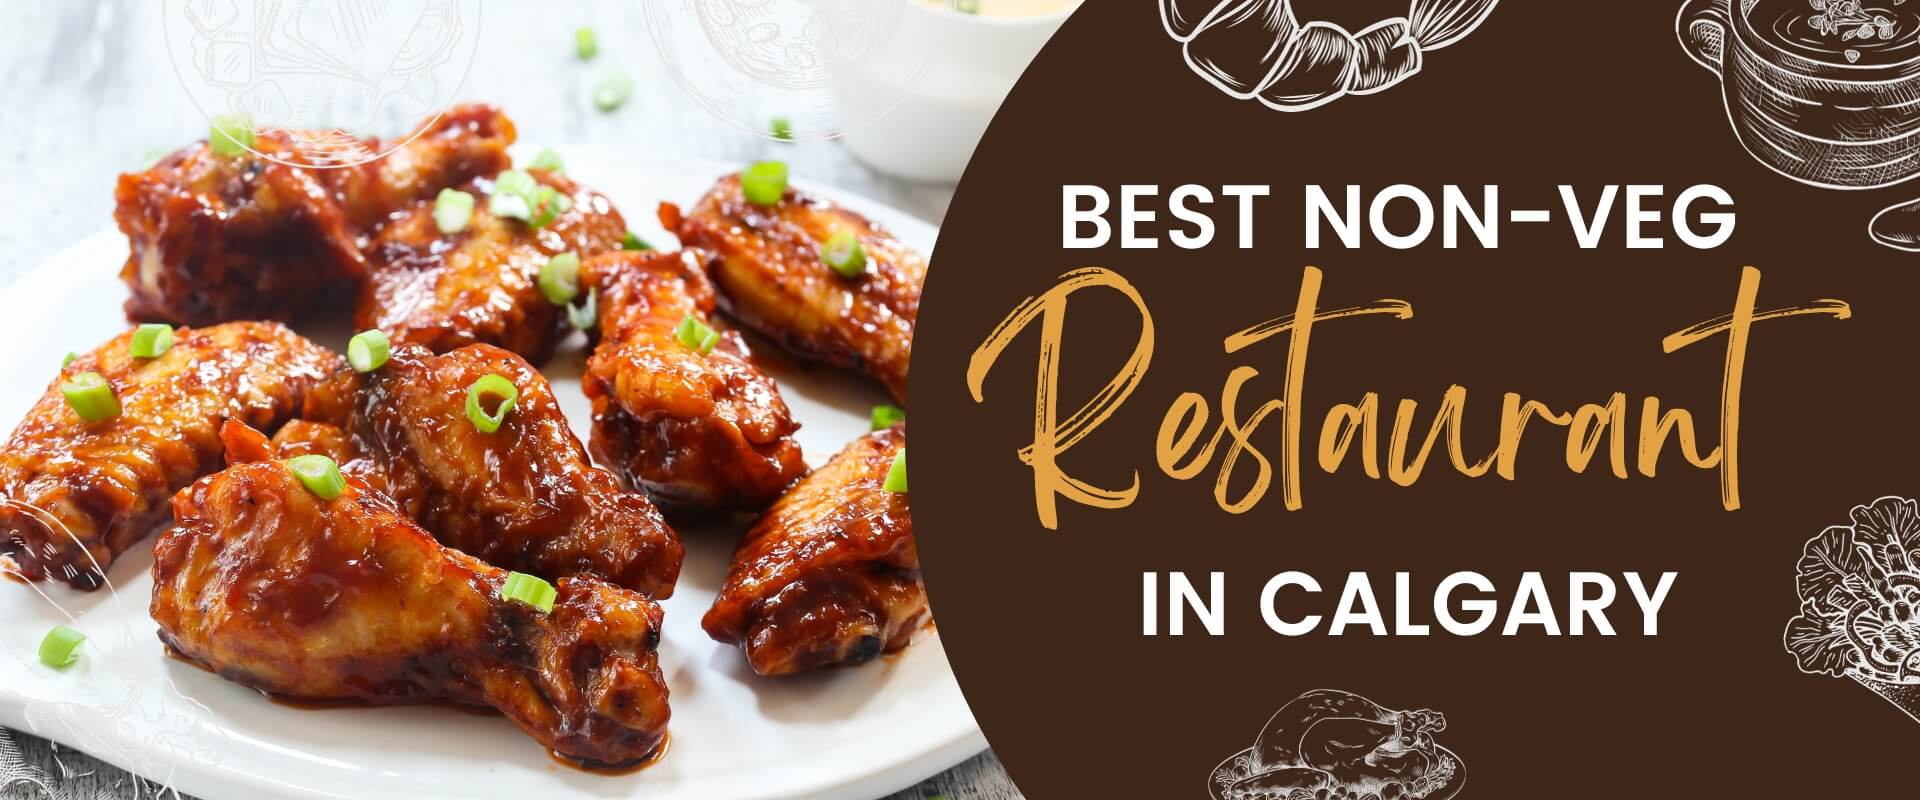 Best Non-Vegetarian Restaurant Calgary: Unforgettable Gathering